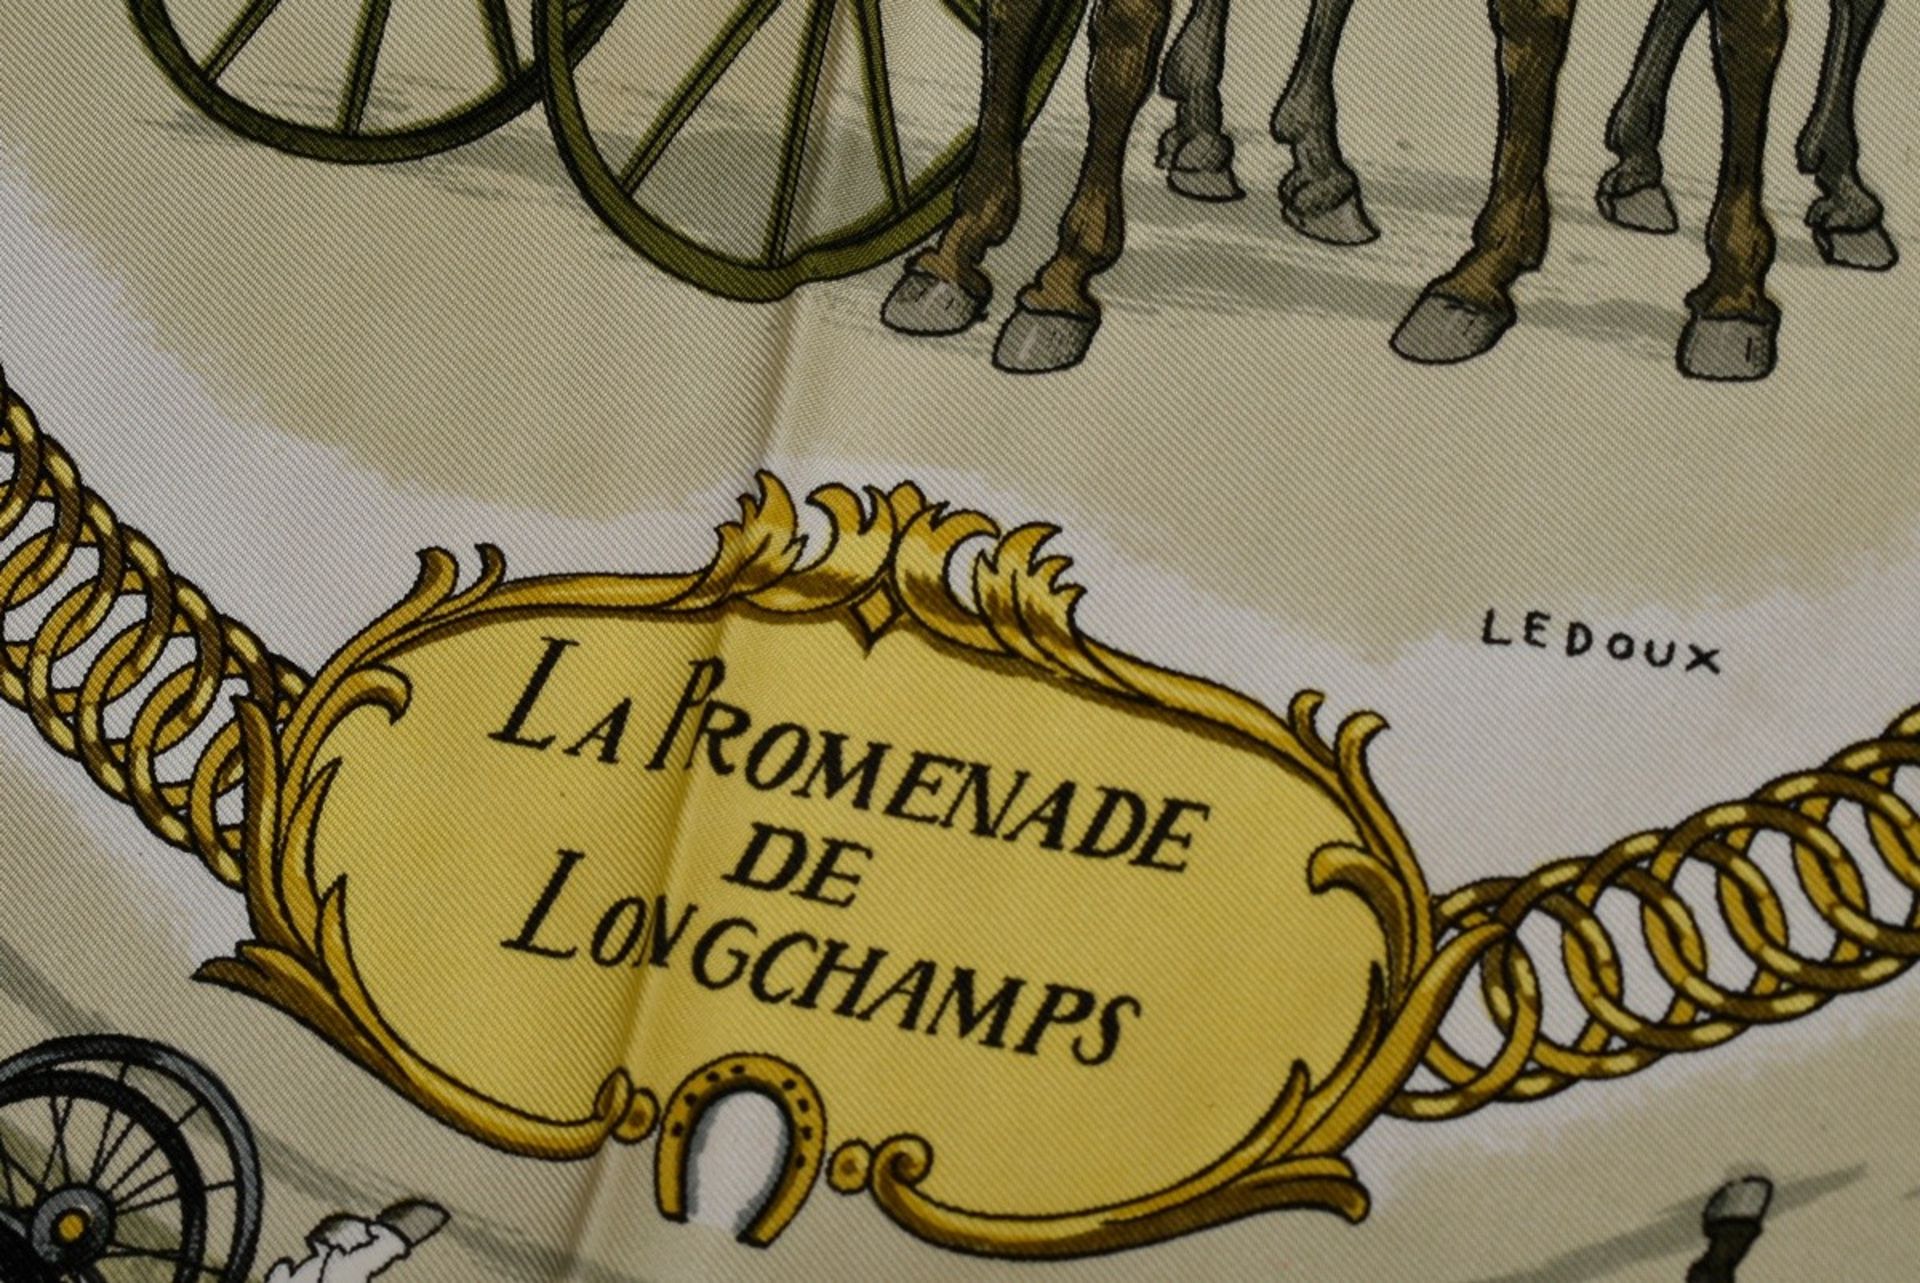 Hermès silk carré "La Promenade de Longchamps" in bordeaux, design: Philippe Ledoux 1965, rolled ed - Image 4 of 4